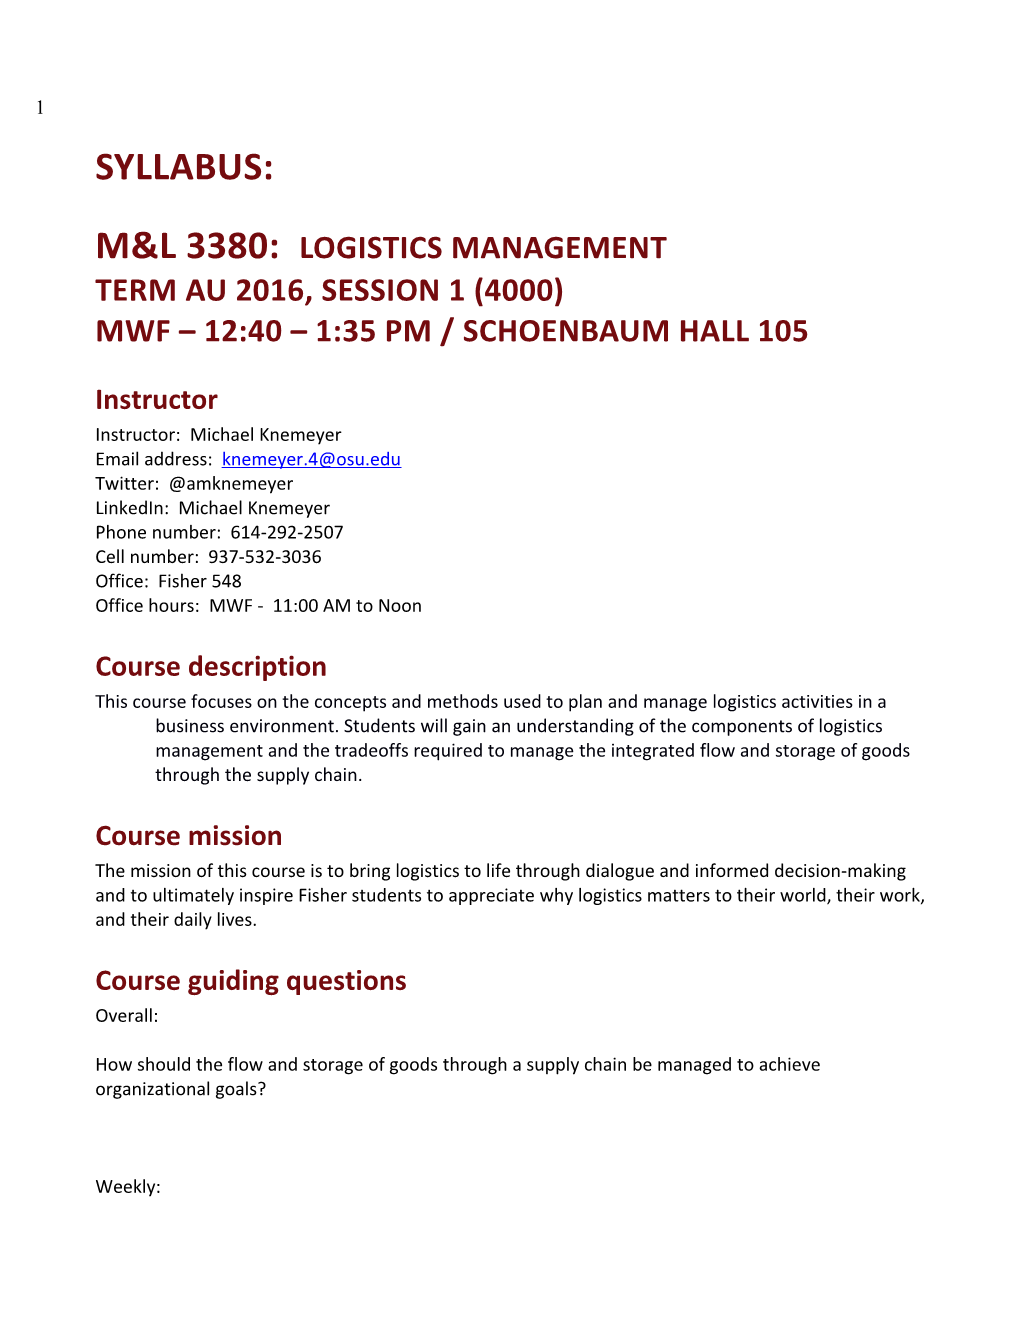 M&L 3380: Logistics Management TERM AU 2016, Session 1 (4000)